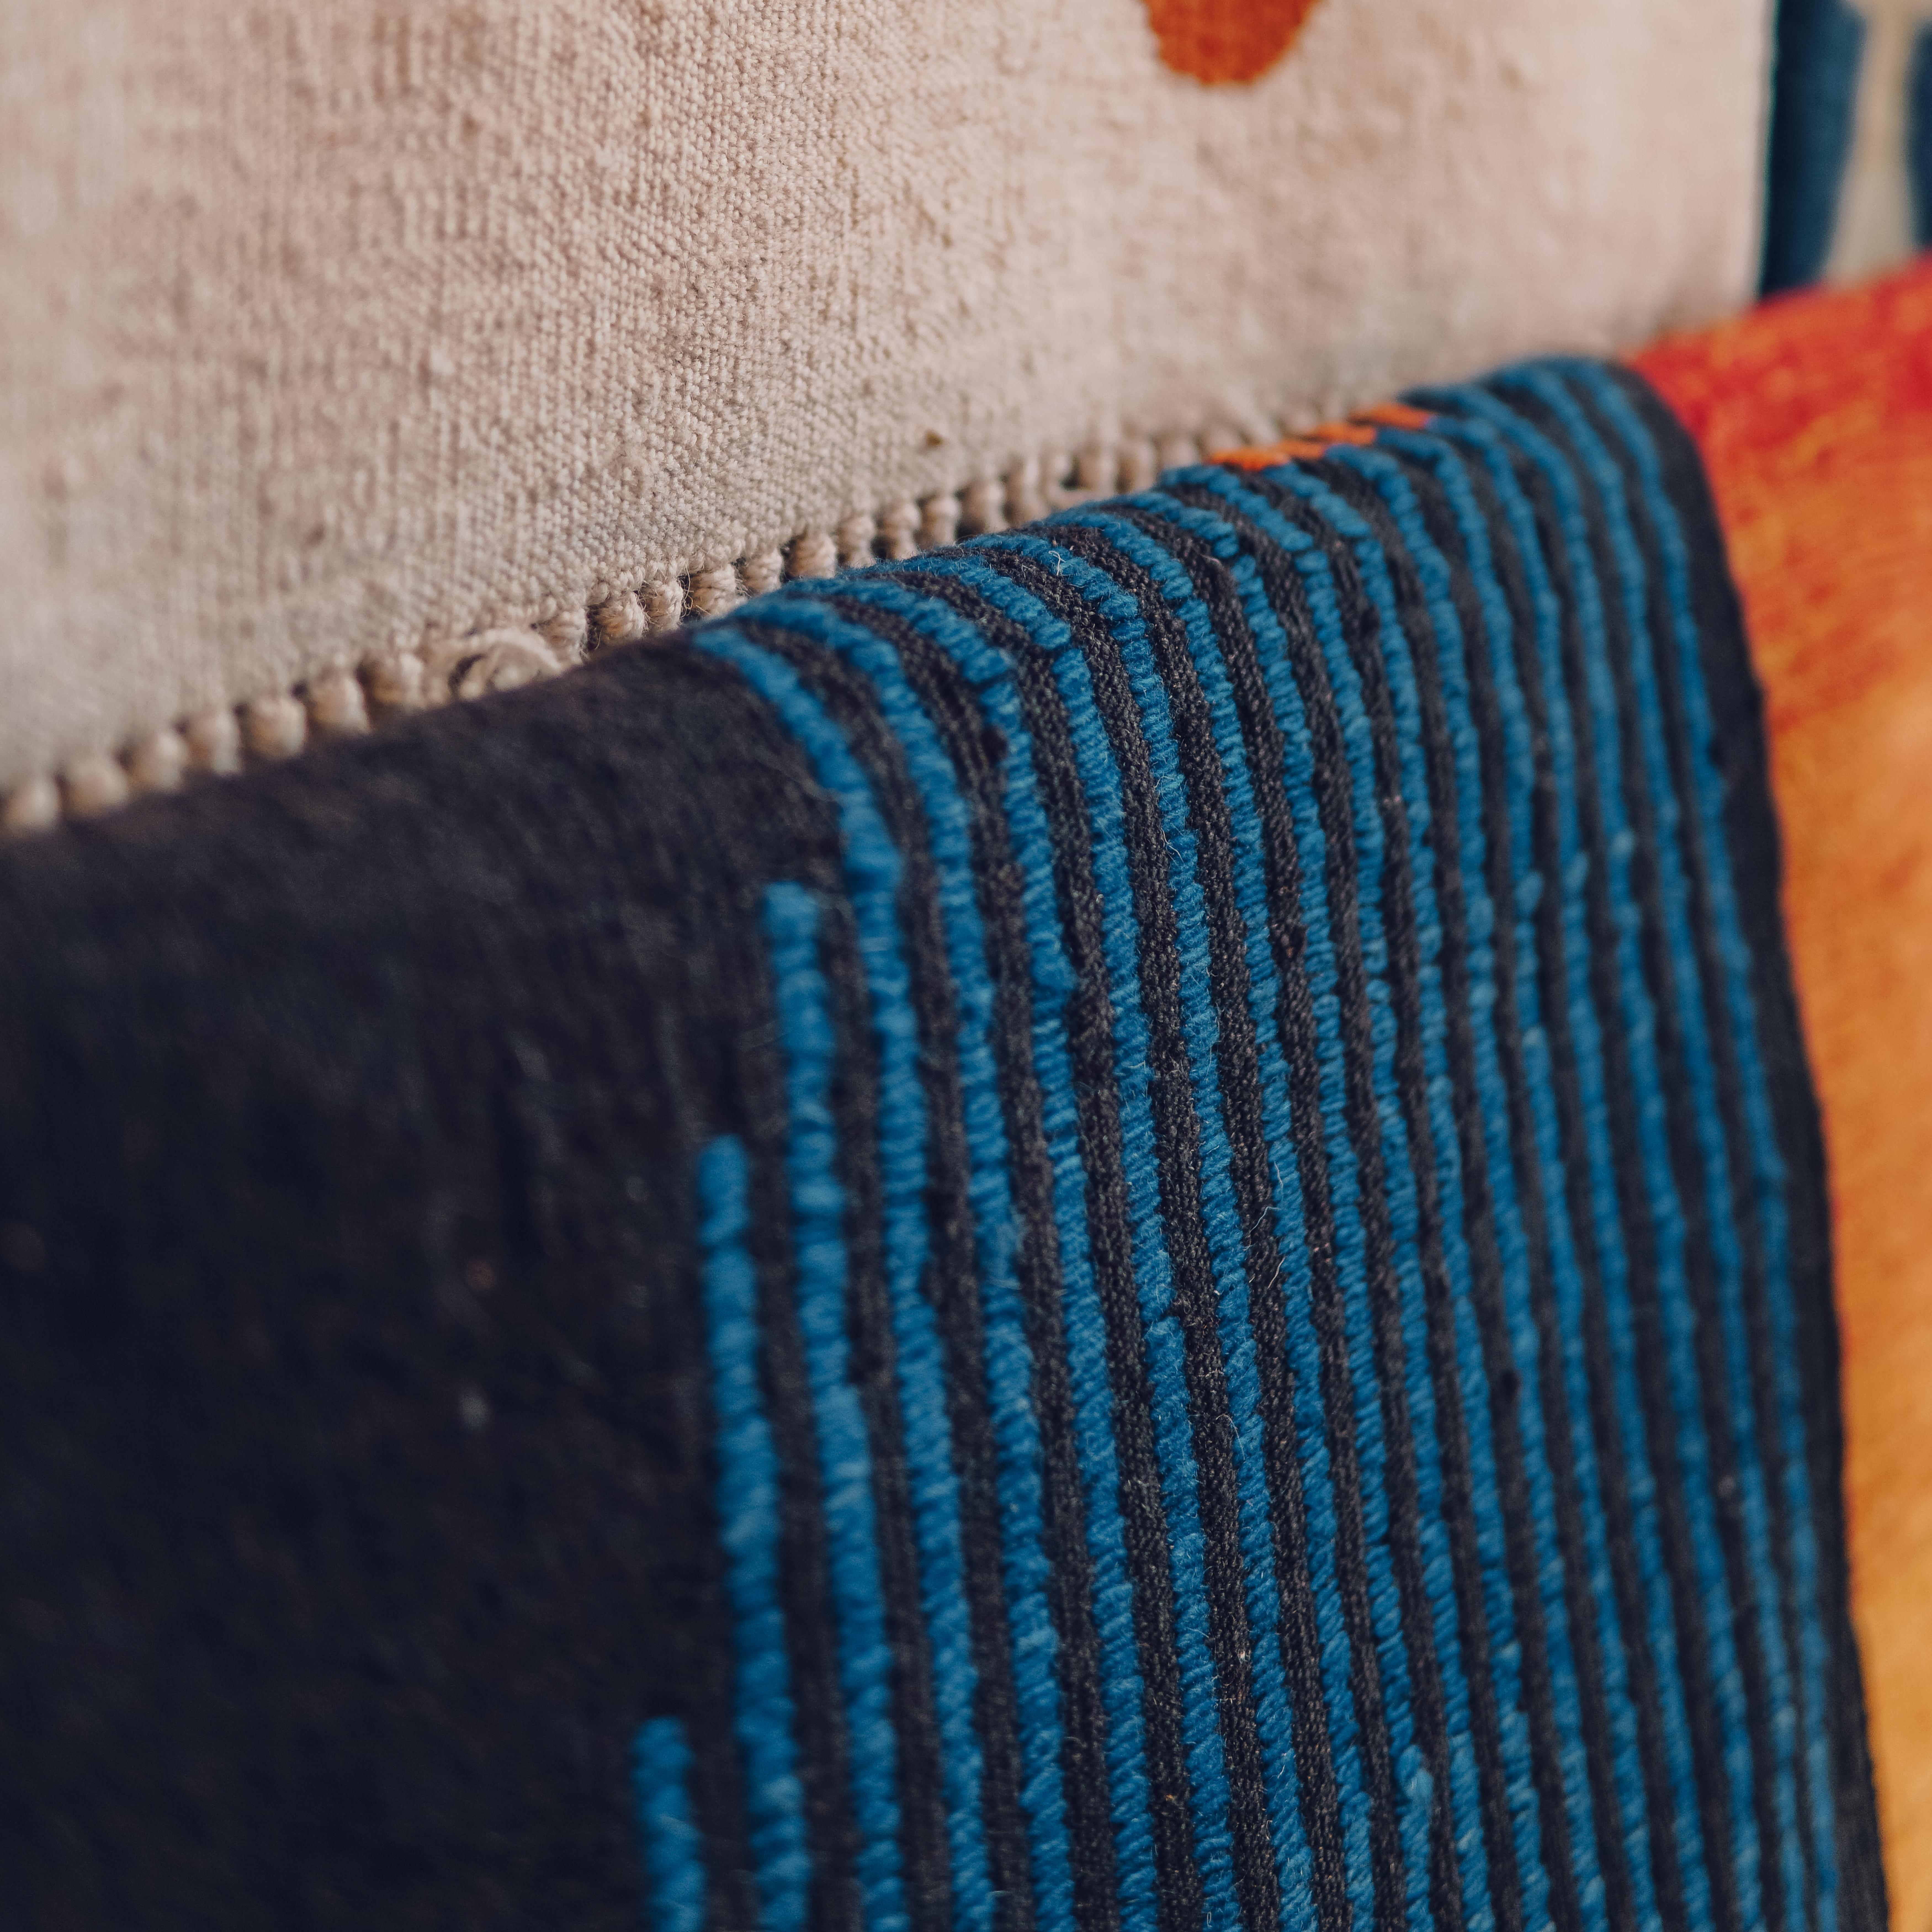 Rehaussez votre espace avec notre Rug & Kilim tissé à la main Tokio, conçu et tissé avec talent sur un métier à tisser traditionnel. Nous collaborons avec des femmes artisans talentueuses dans toute la Turquie pour donner vie à nos tapis kilim, en